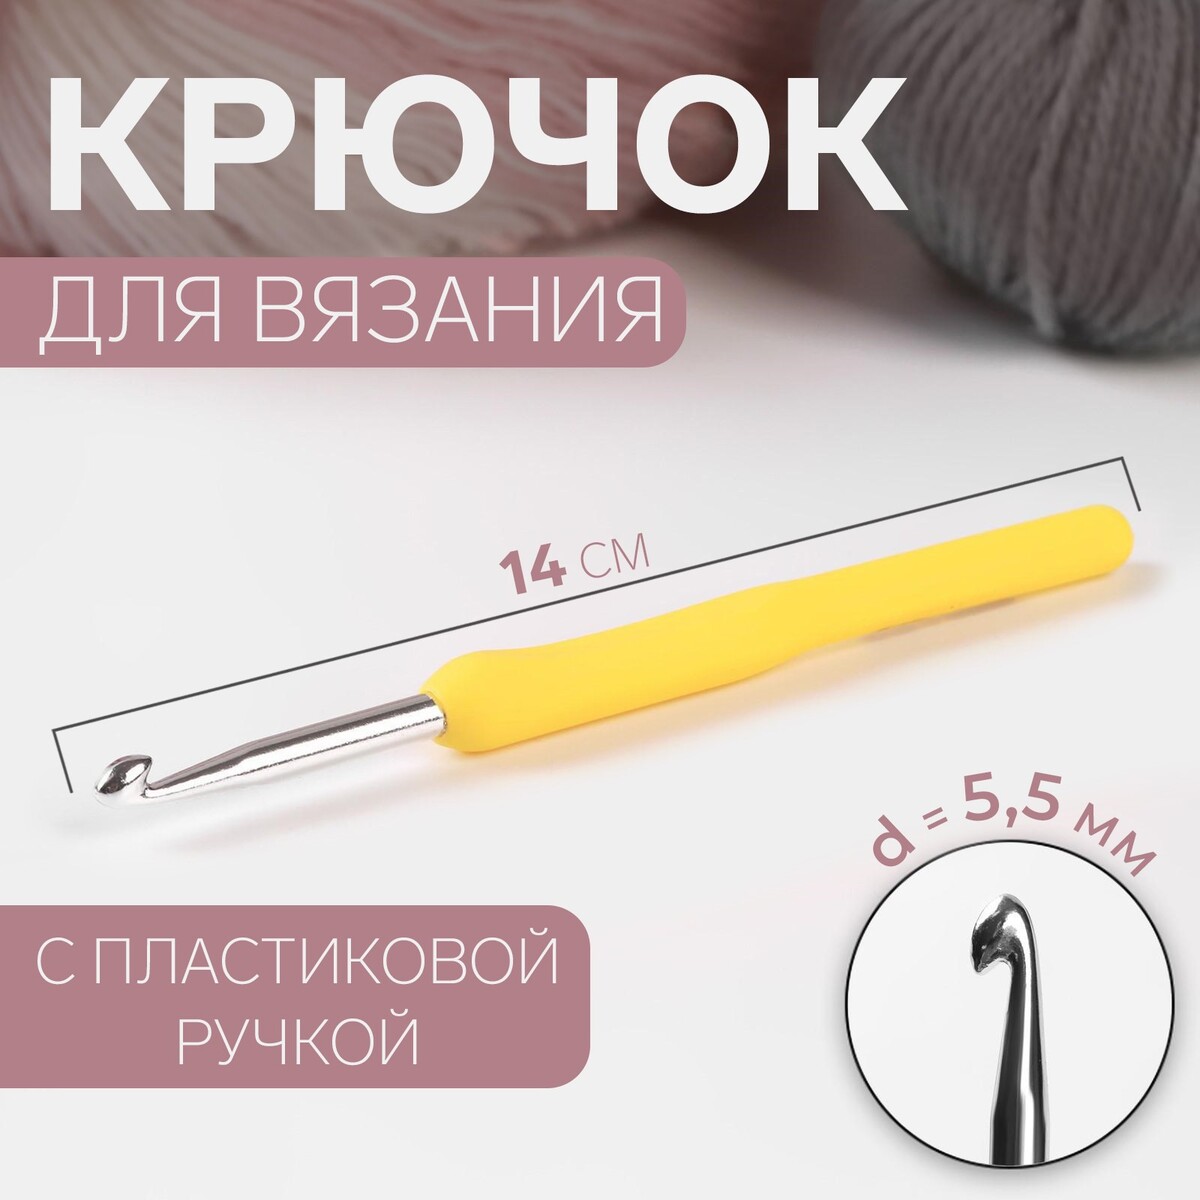 Крючок для вязания, с пластиковой ручкой, d = 5,5 мм, 14 см, цвет желтый